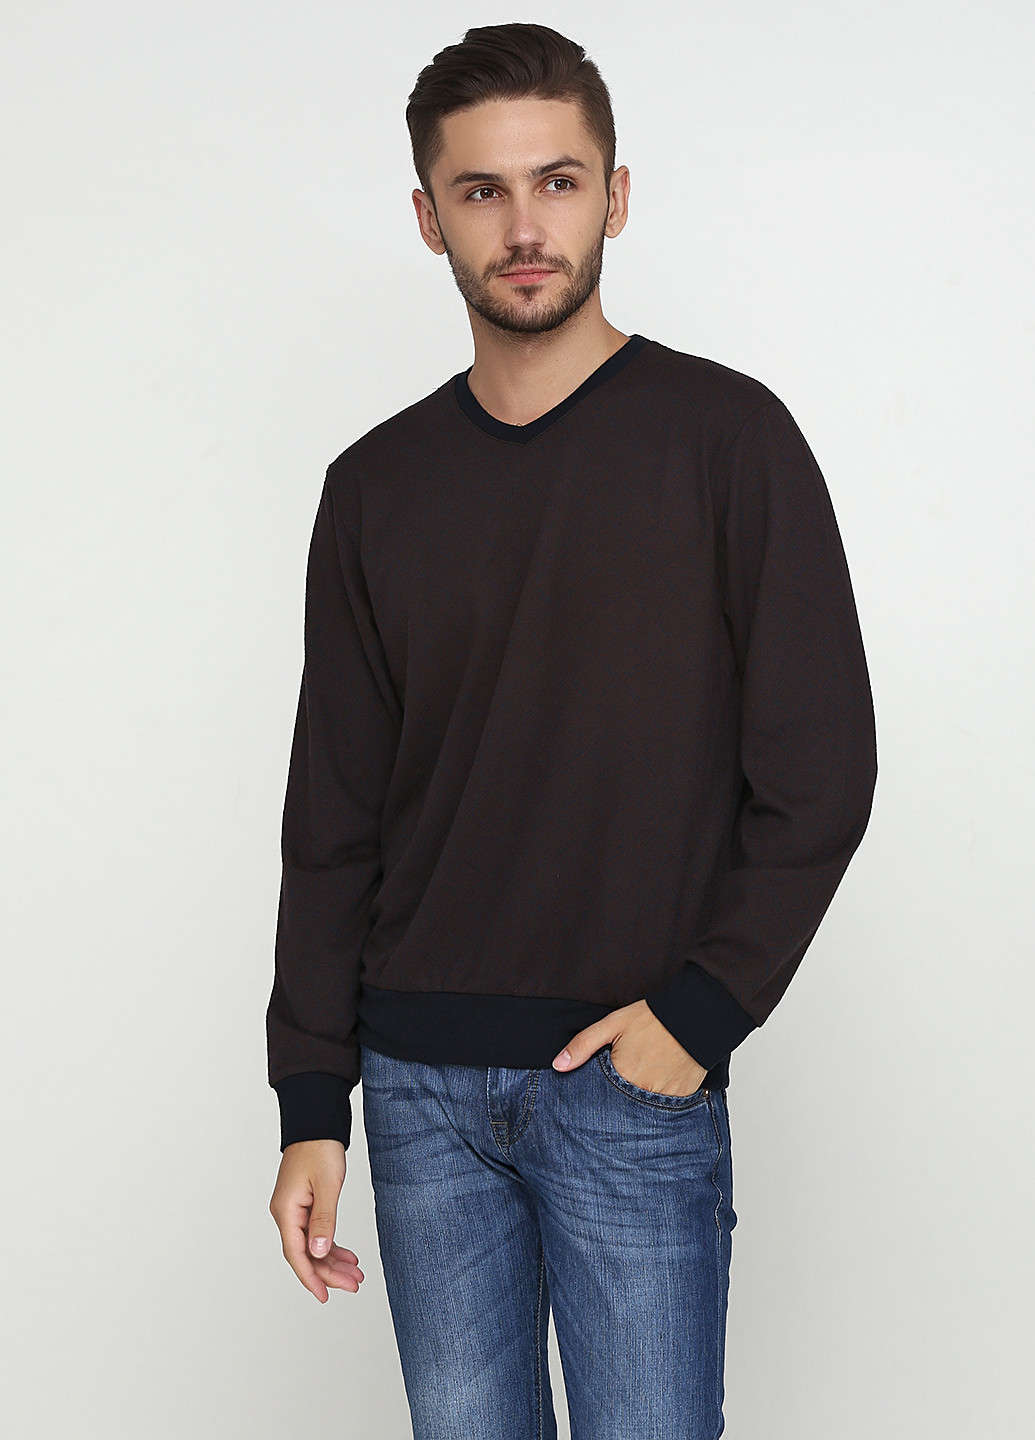 Темно-коричневый демисезонный пуловер пуловер MSY